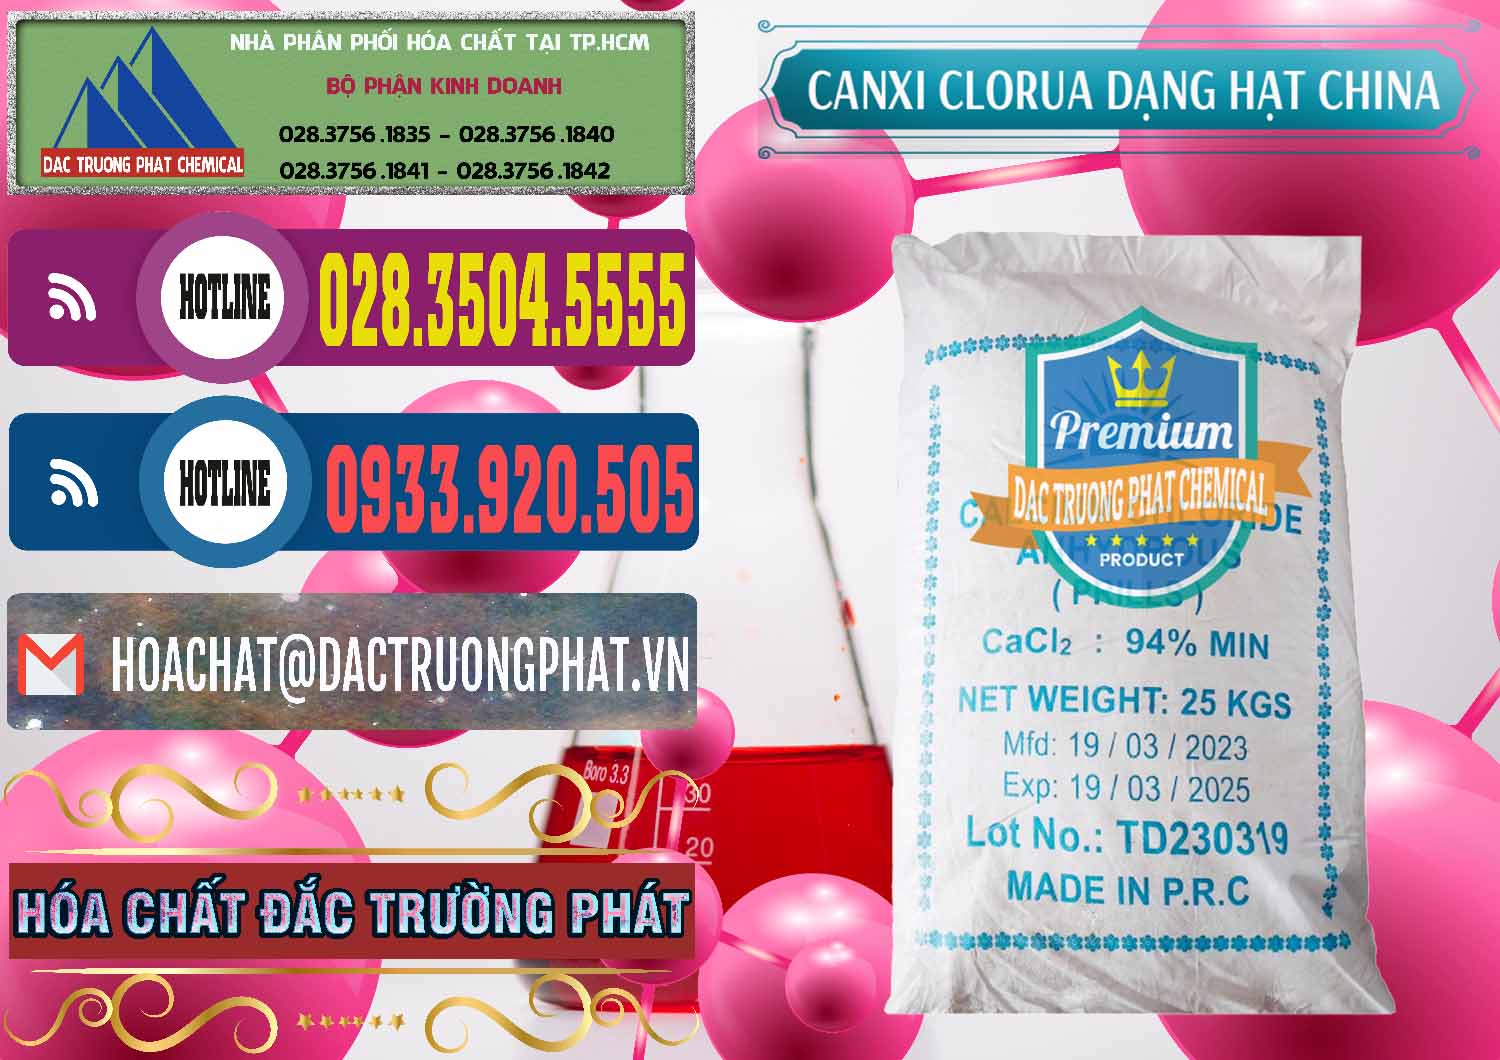 Công ty phân phối & bán CaCl2 – Canxi Clorua 94% Dạng Hạt Trung Quốc China - 0373 - Nhà cung cấp và phân phối hóa chất tại TP.HCM - muabanhoachat.com.vn